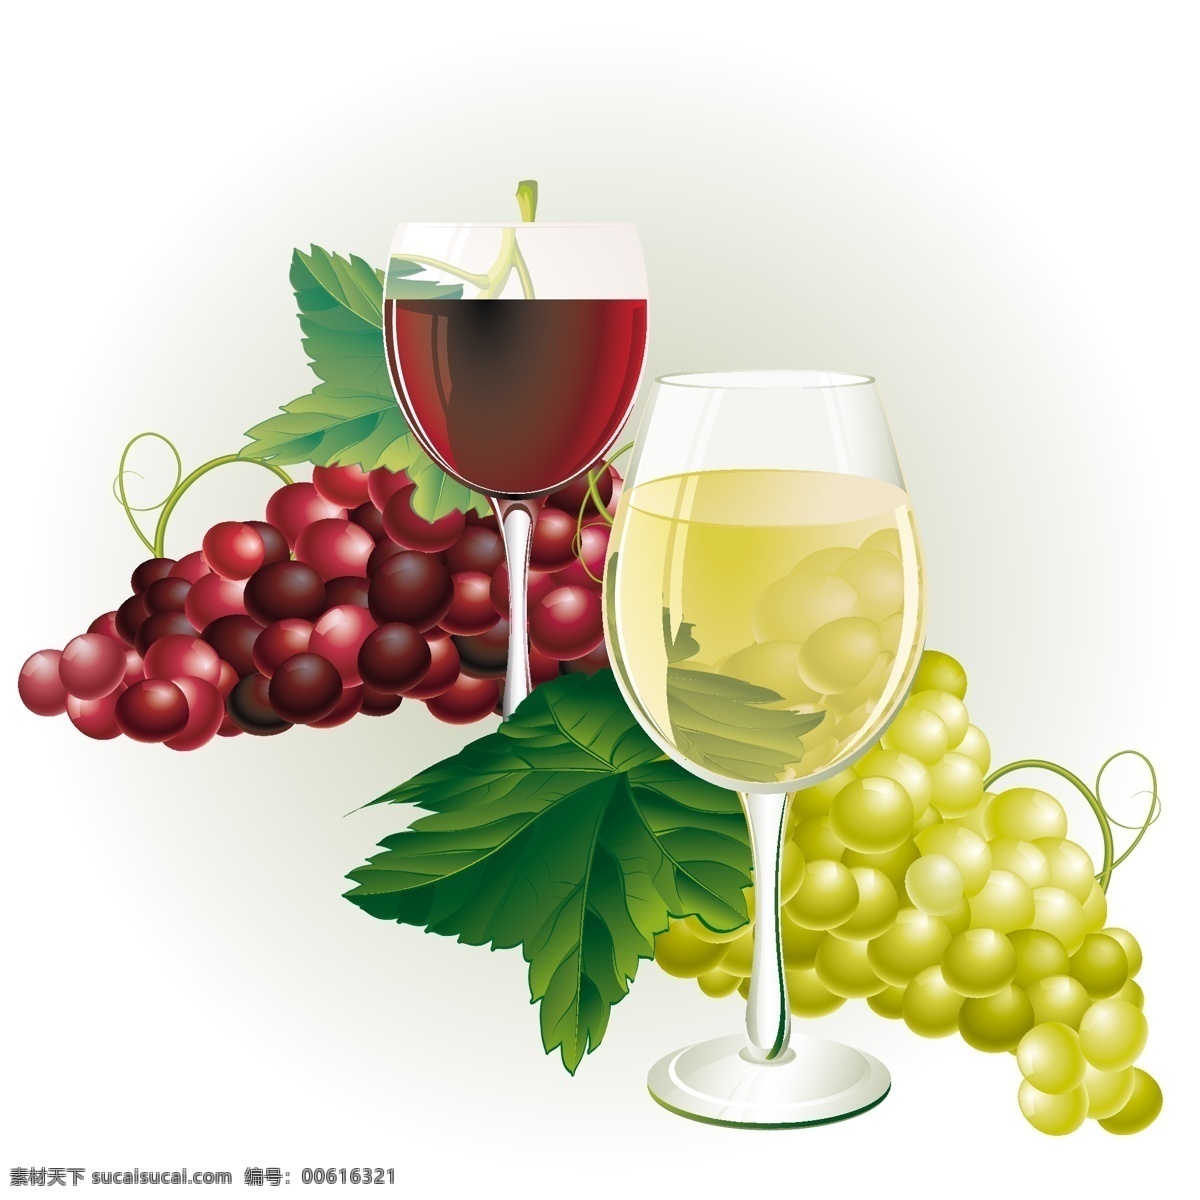 精美 葡萄 高脚杯 矢量 果蔬 葡萄酒 葡萄叶子 食品 矢量图 水果 植物 其他矢量图